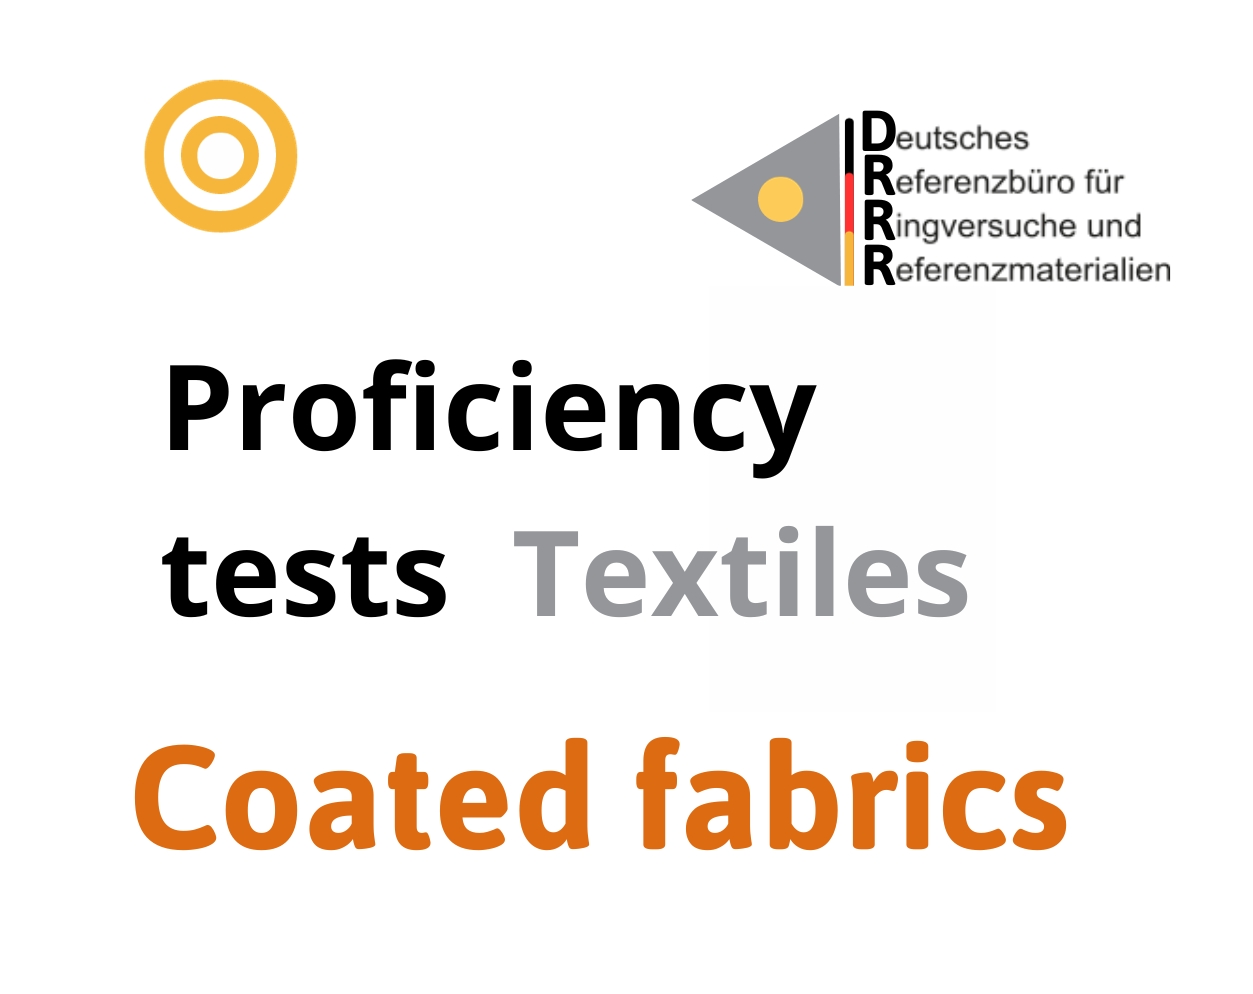 Thử nghiệm thành thạo (ISO 17043) các thông số trên mẫu vài có lớp phủ (Coated fabrics), Hãng DRRR, Đức